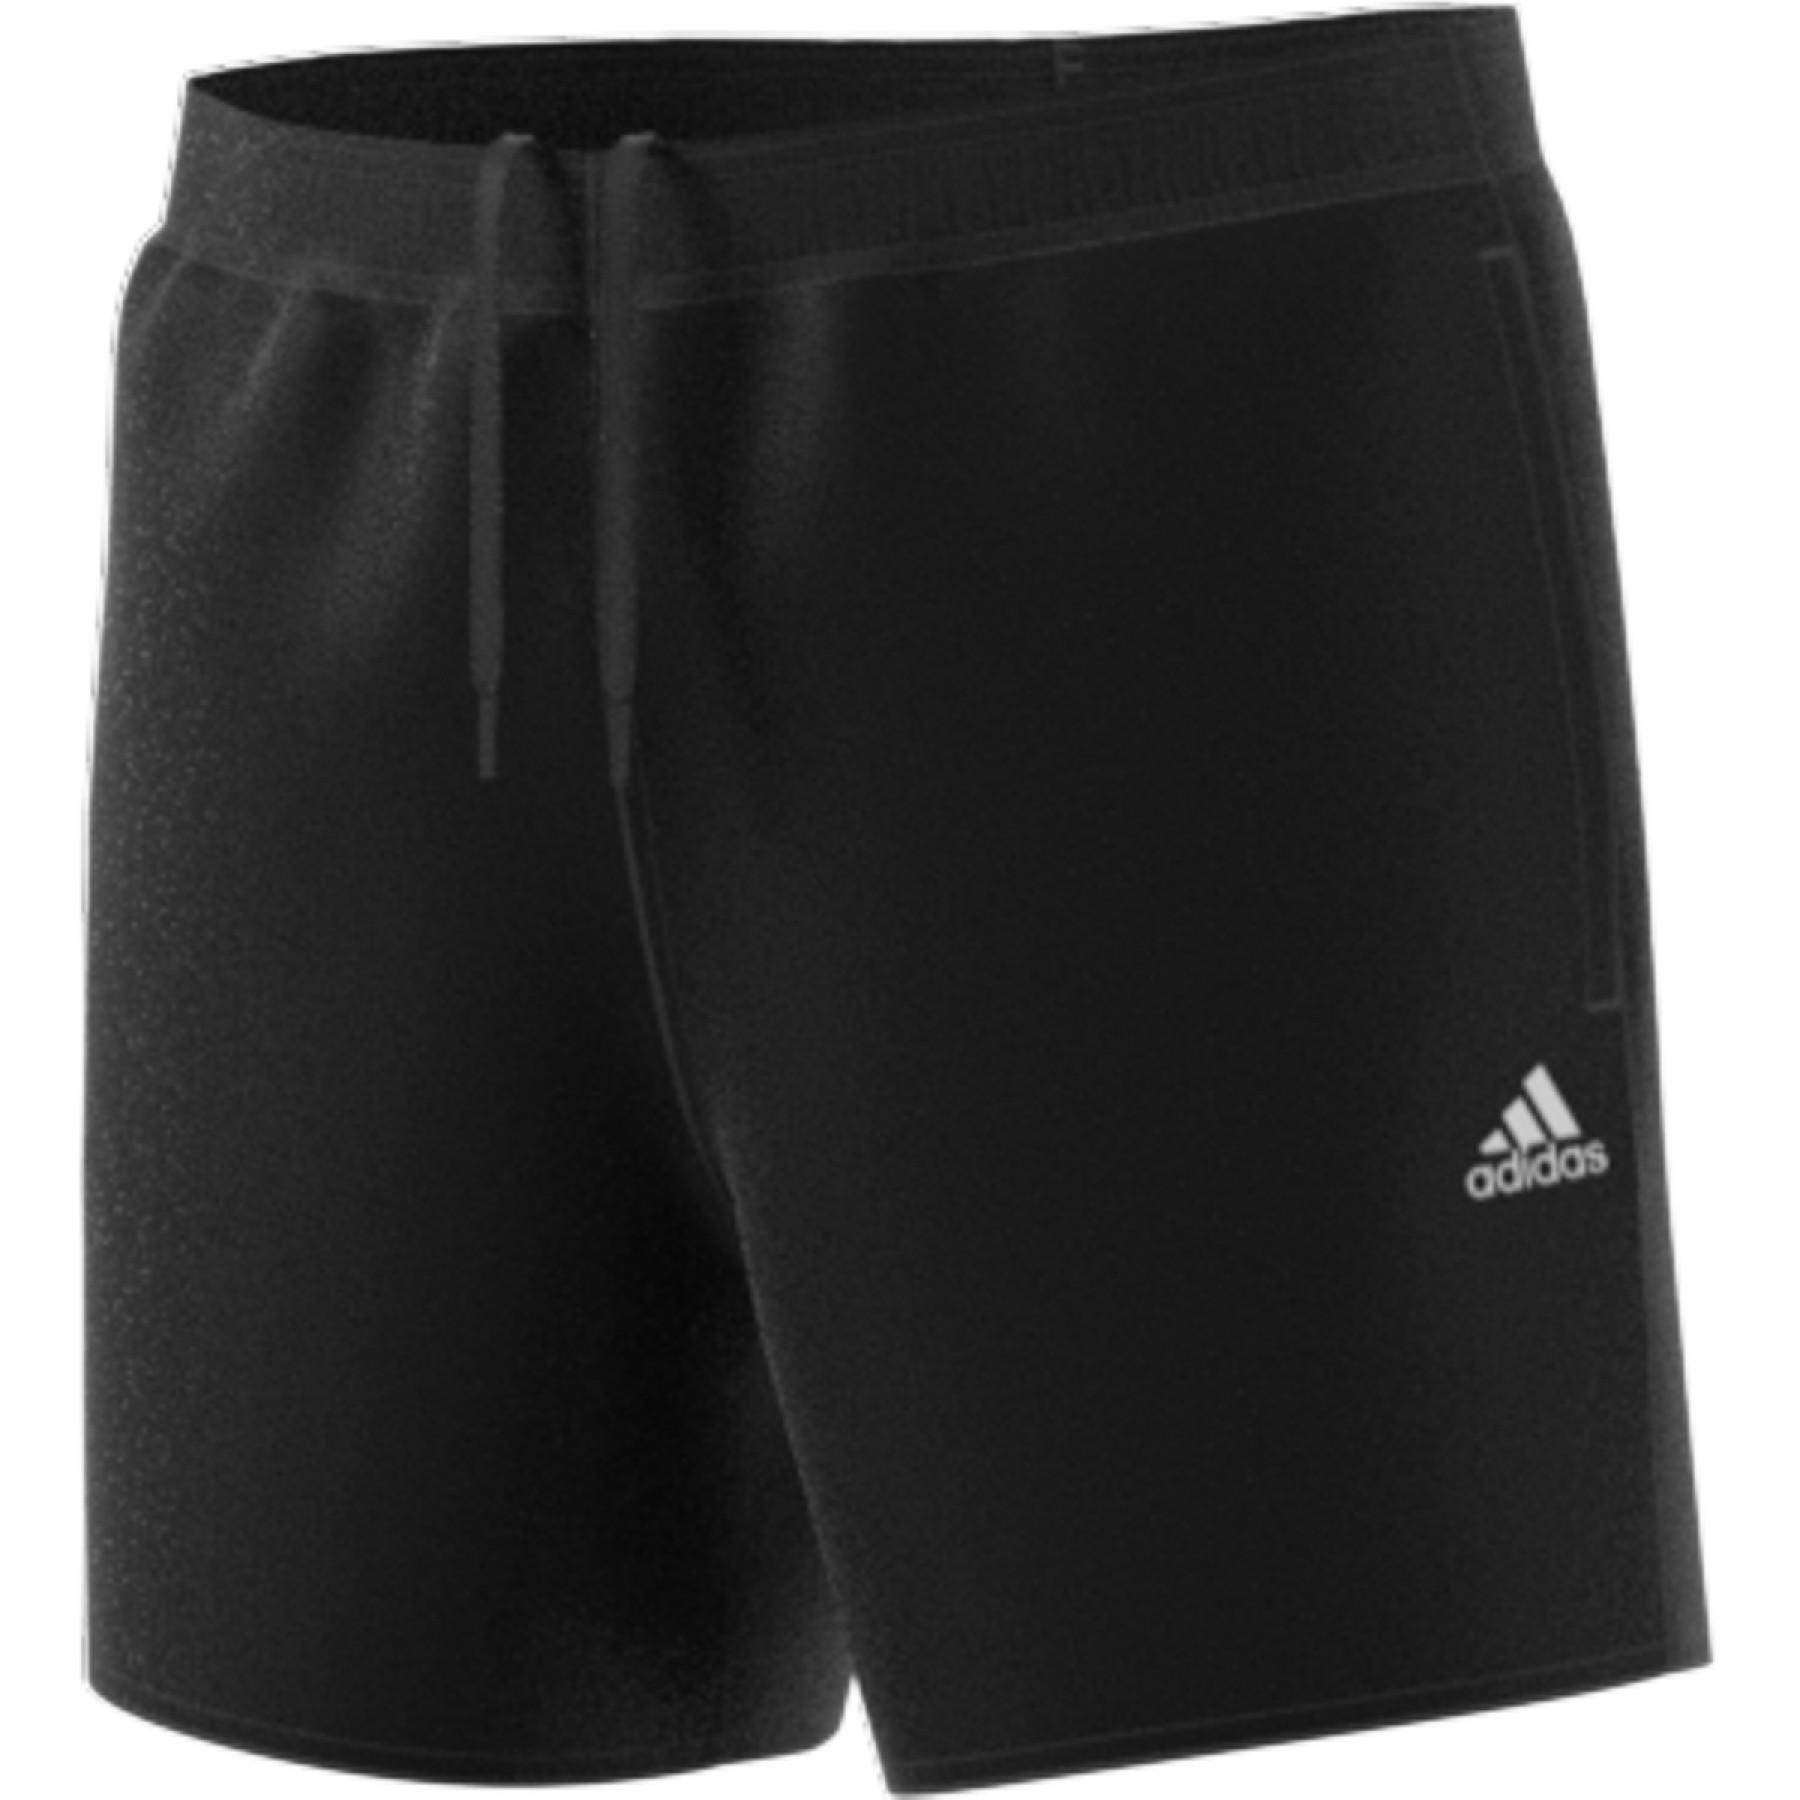 Swimming shorts adidas Length Solid